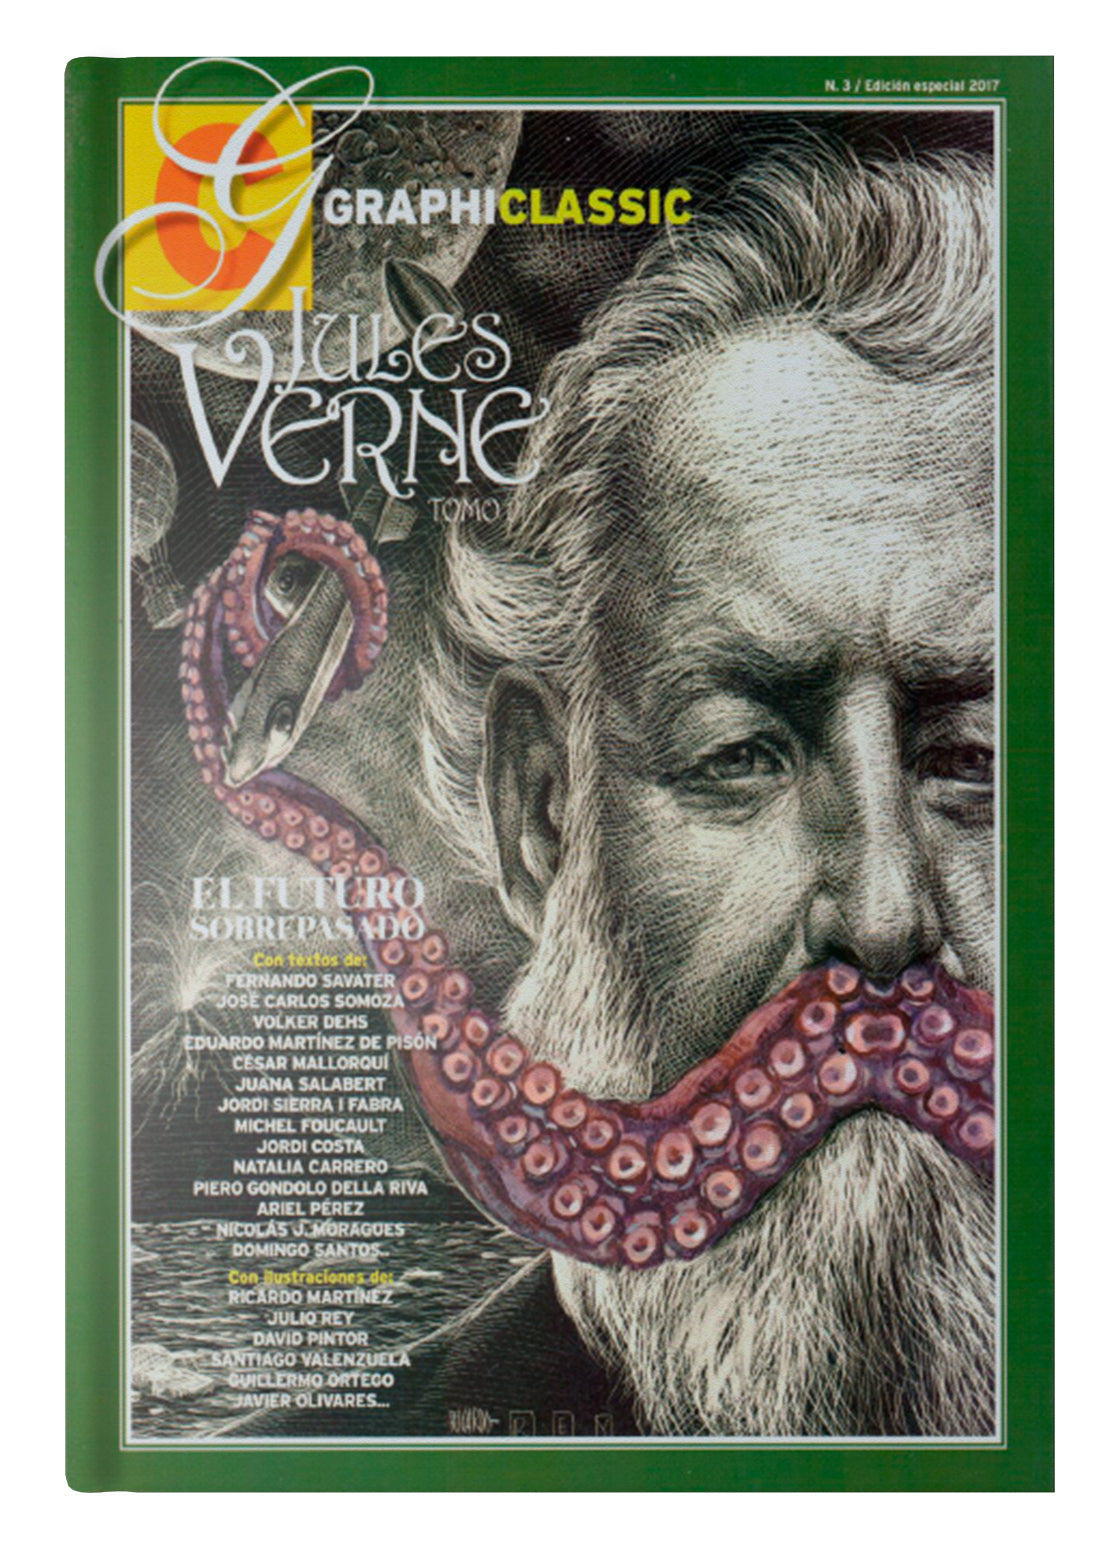 Pack: Todo sobre Verne